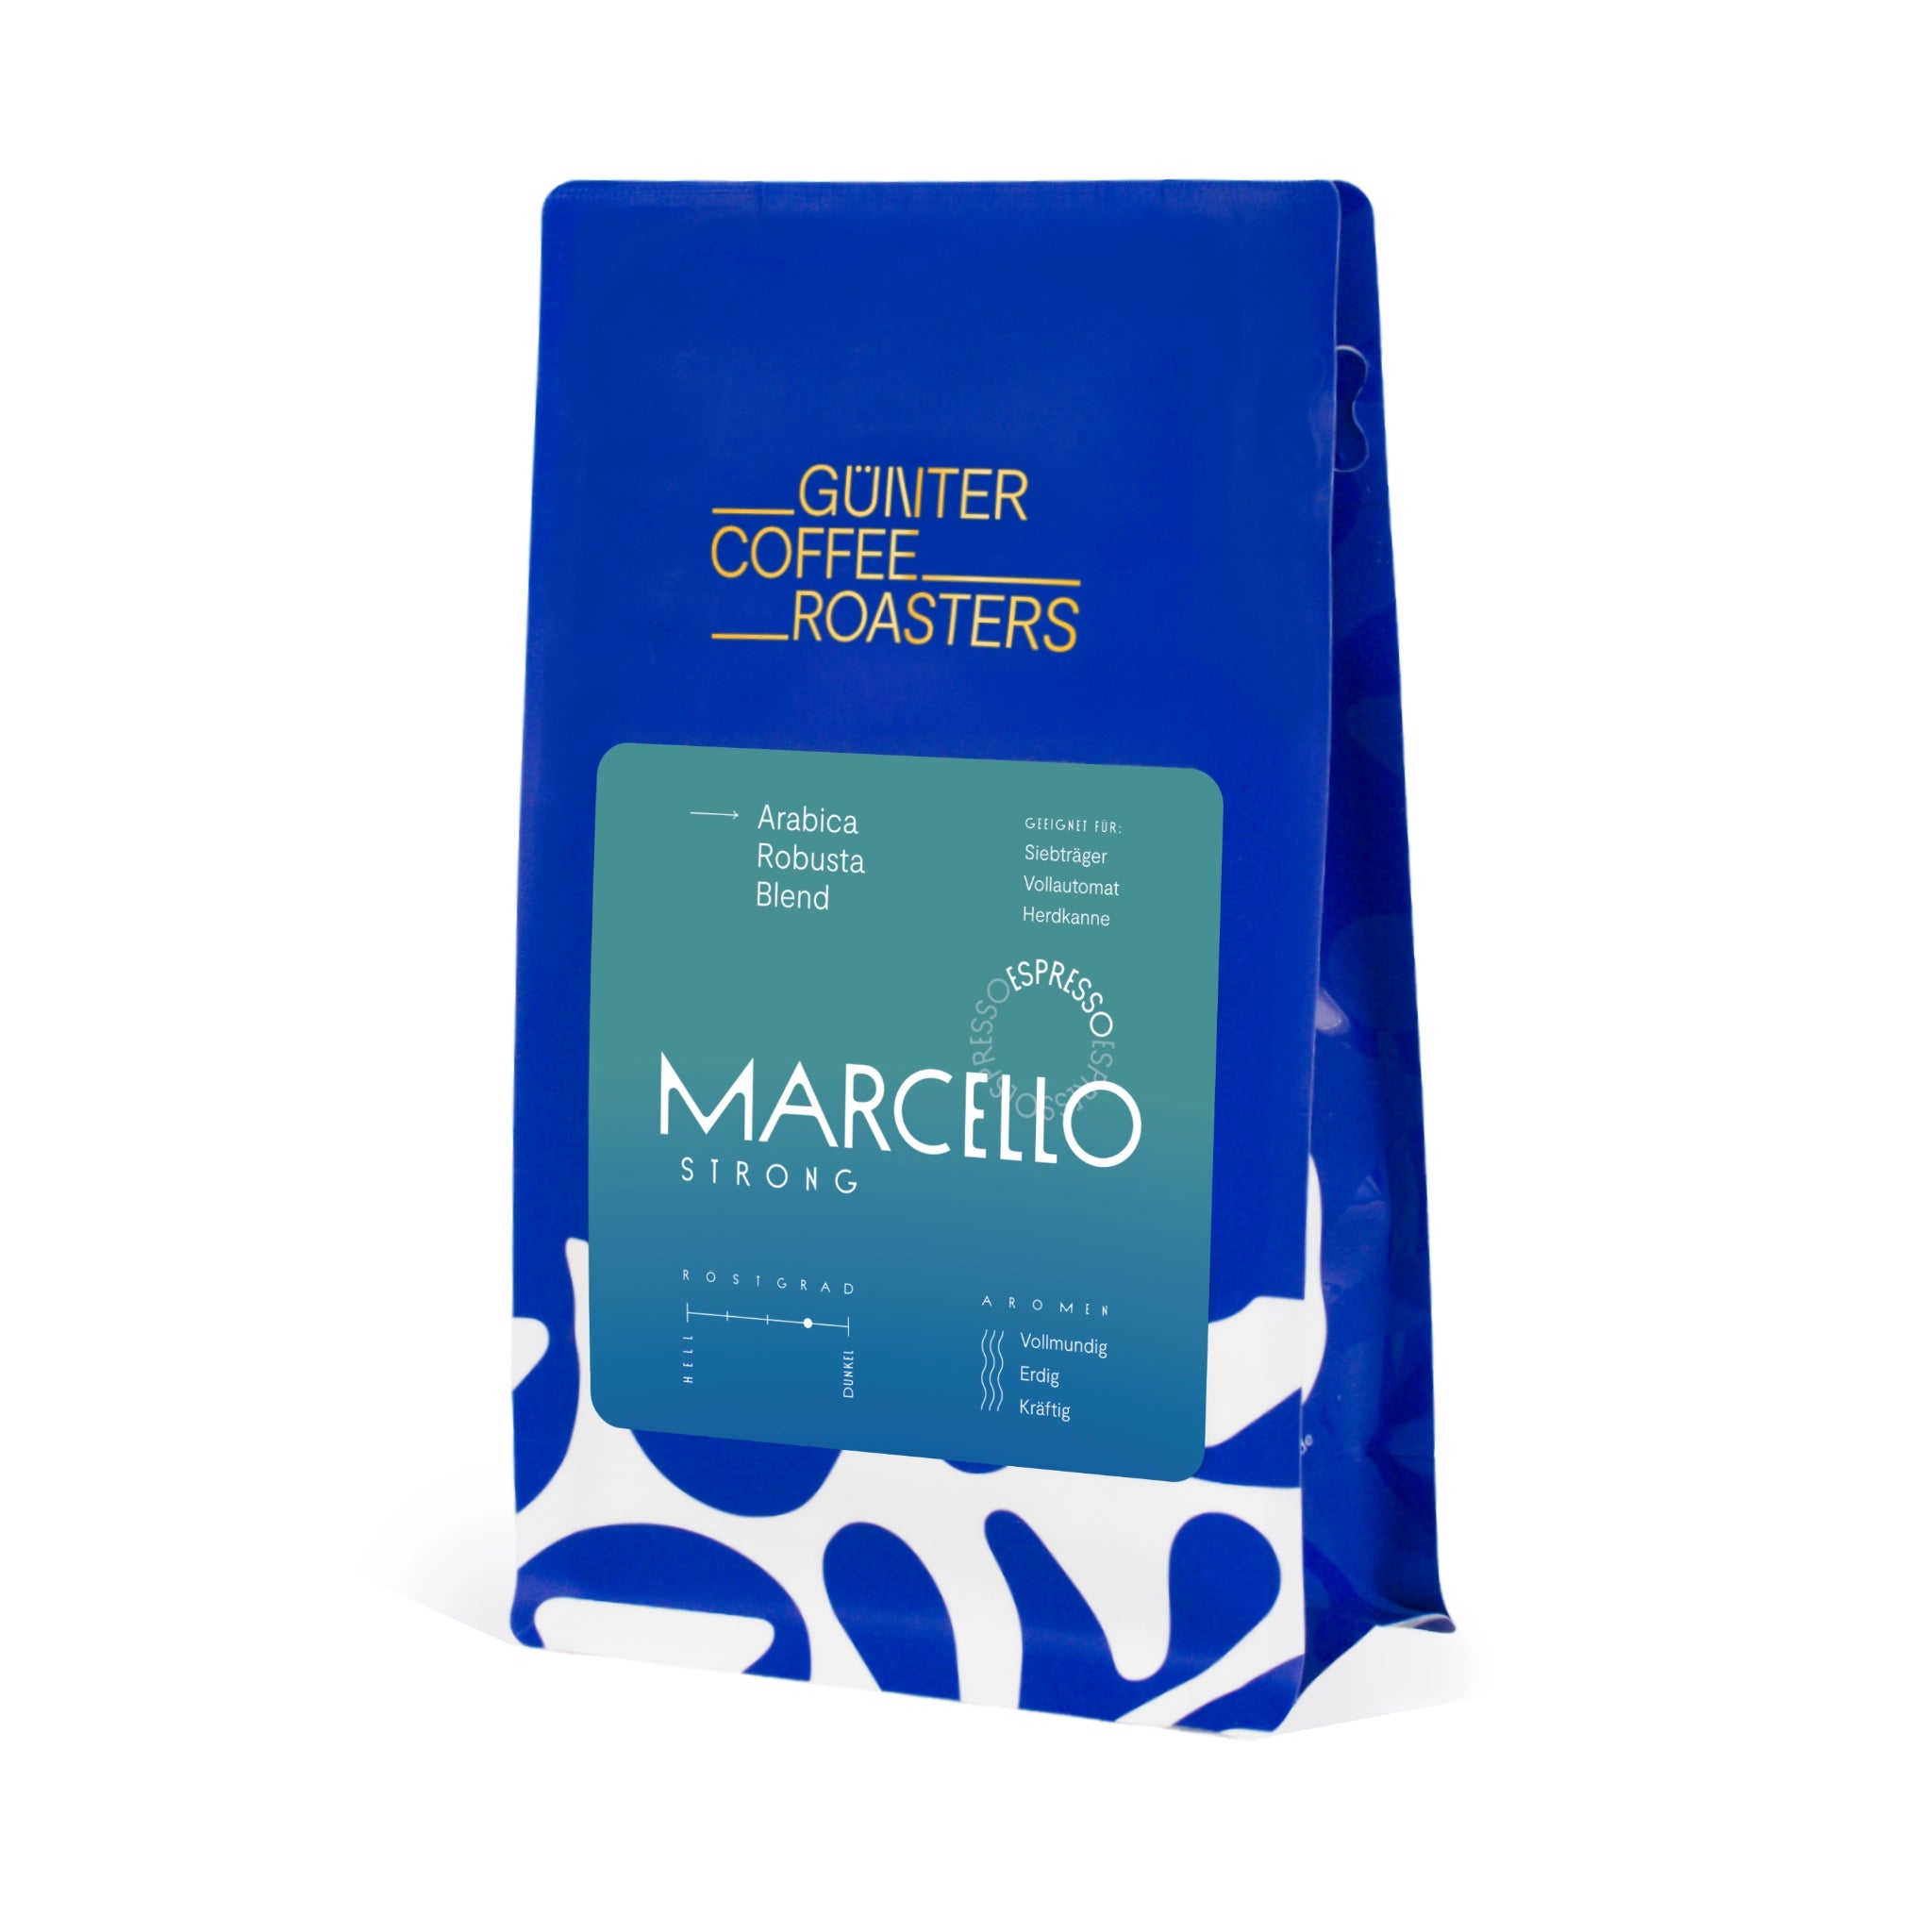 Produktverpackung Marcello Strong Kaffeebohnen aus Mexiko und Ruanda für die Zubereitung als Espresso. Vollmundig, erdig, kräftig im Geschmack. Röstgrad 4 von 5. Arabica-Robusta-Blend. Geeignet für Siebträger, Vollautomat und Herdkanne.